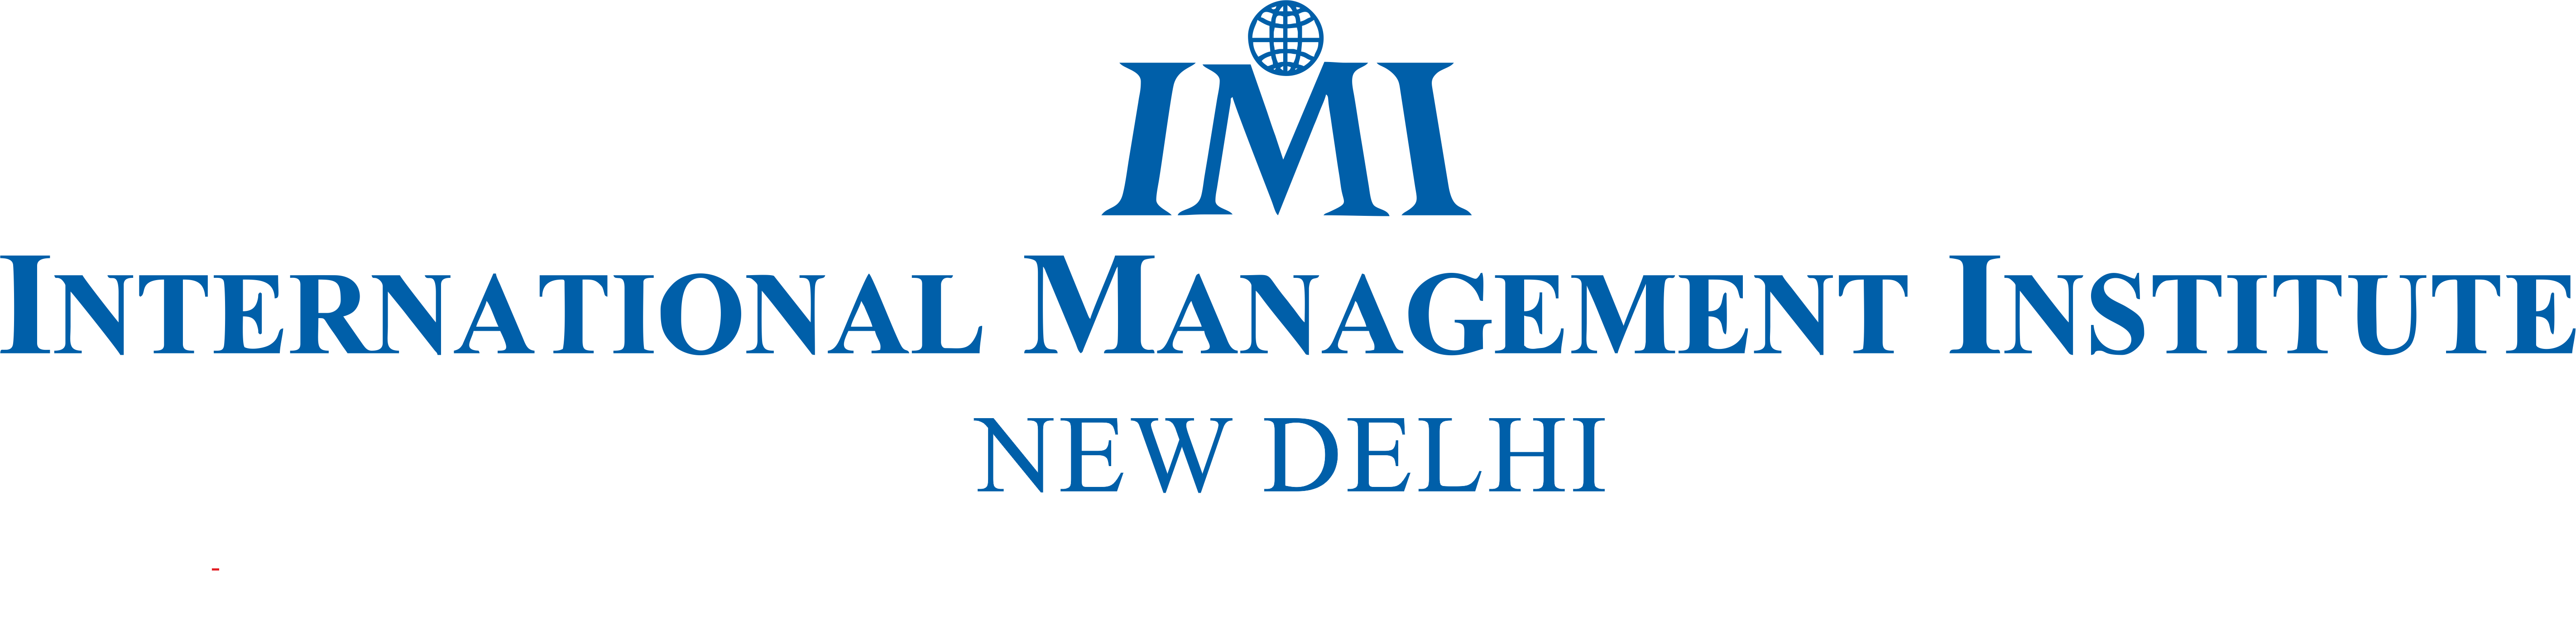 IMI New Delhi